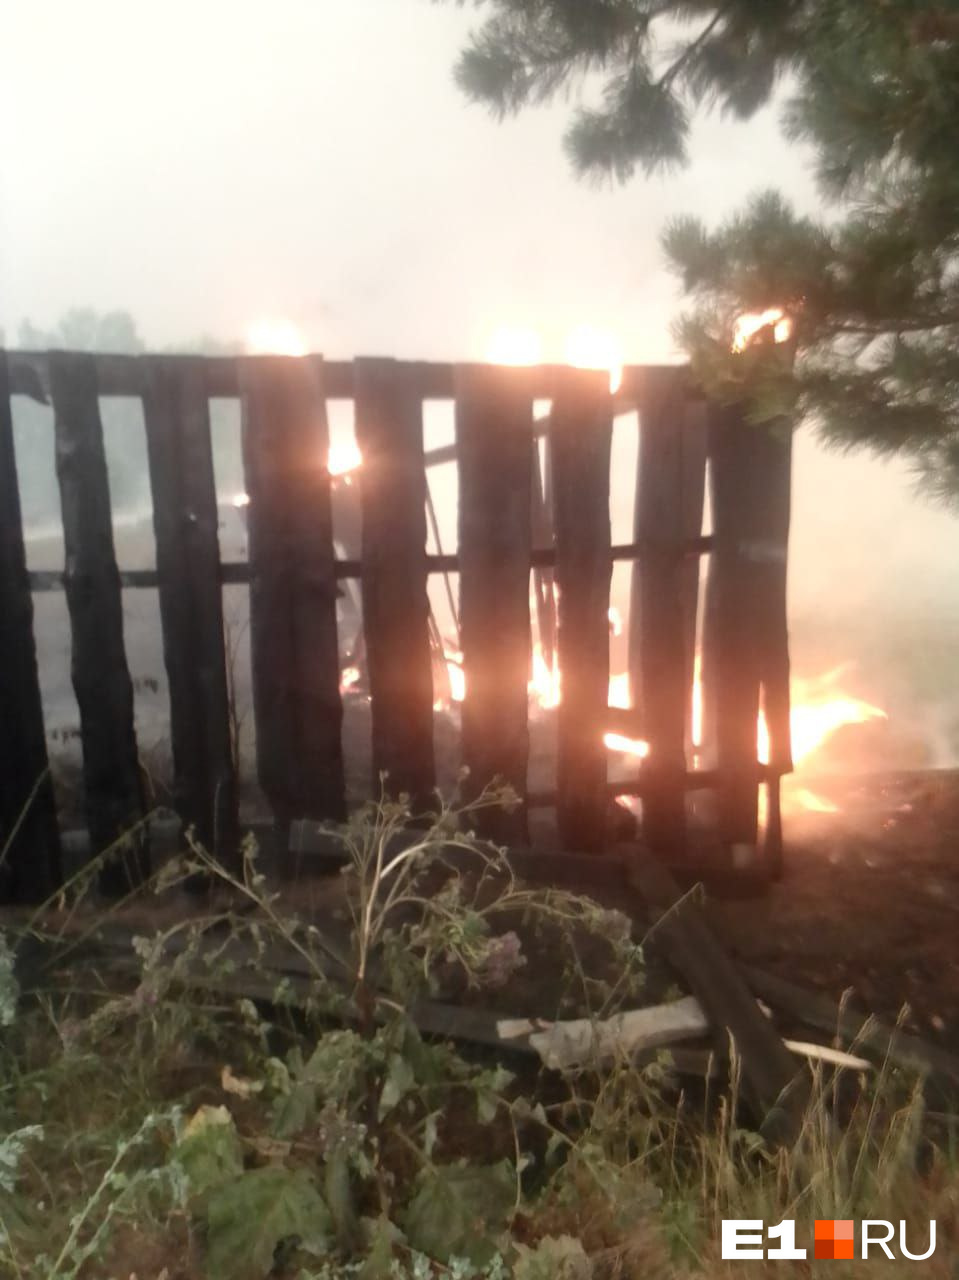 Жители сами тушат свои заборы. Страшный пожар вплотную подошел к селу неподалеку от Екатеринбурга